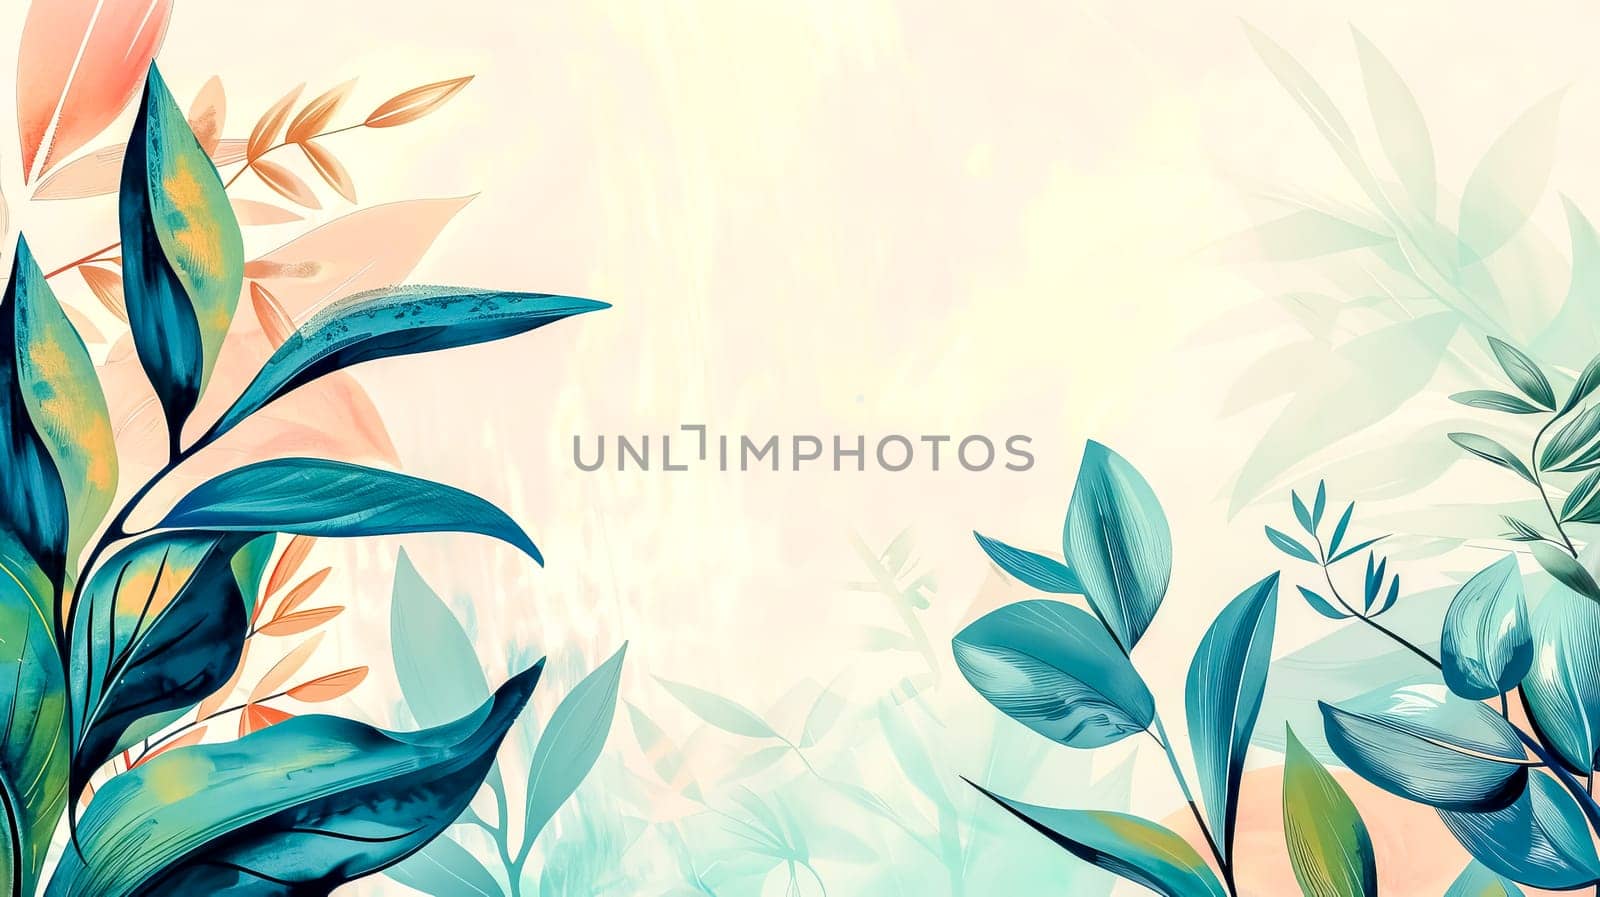 Serene botanical background with pastel tones by Edophoto